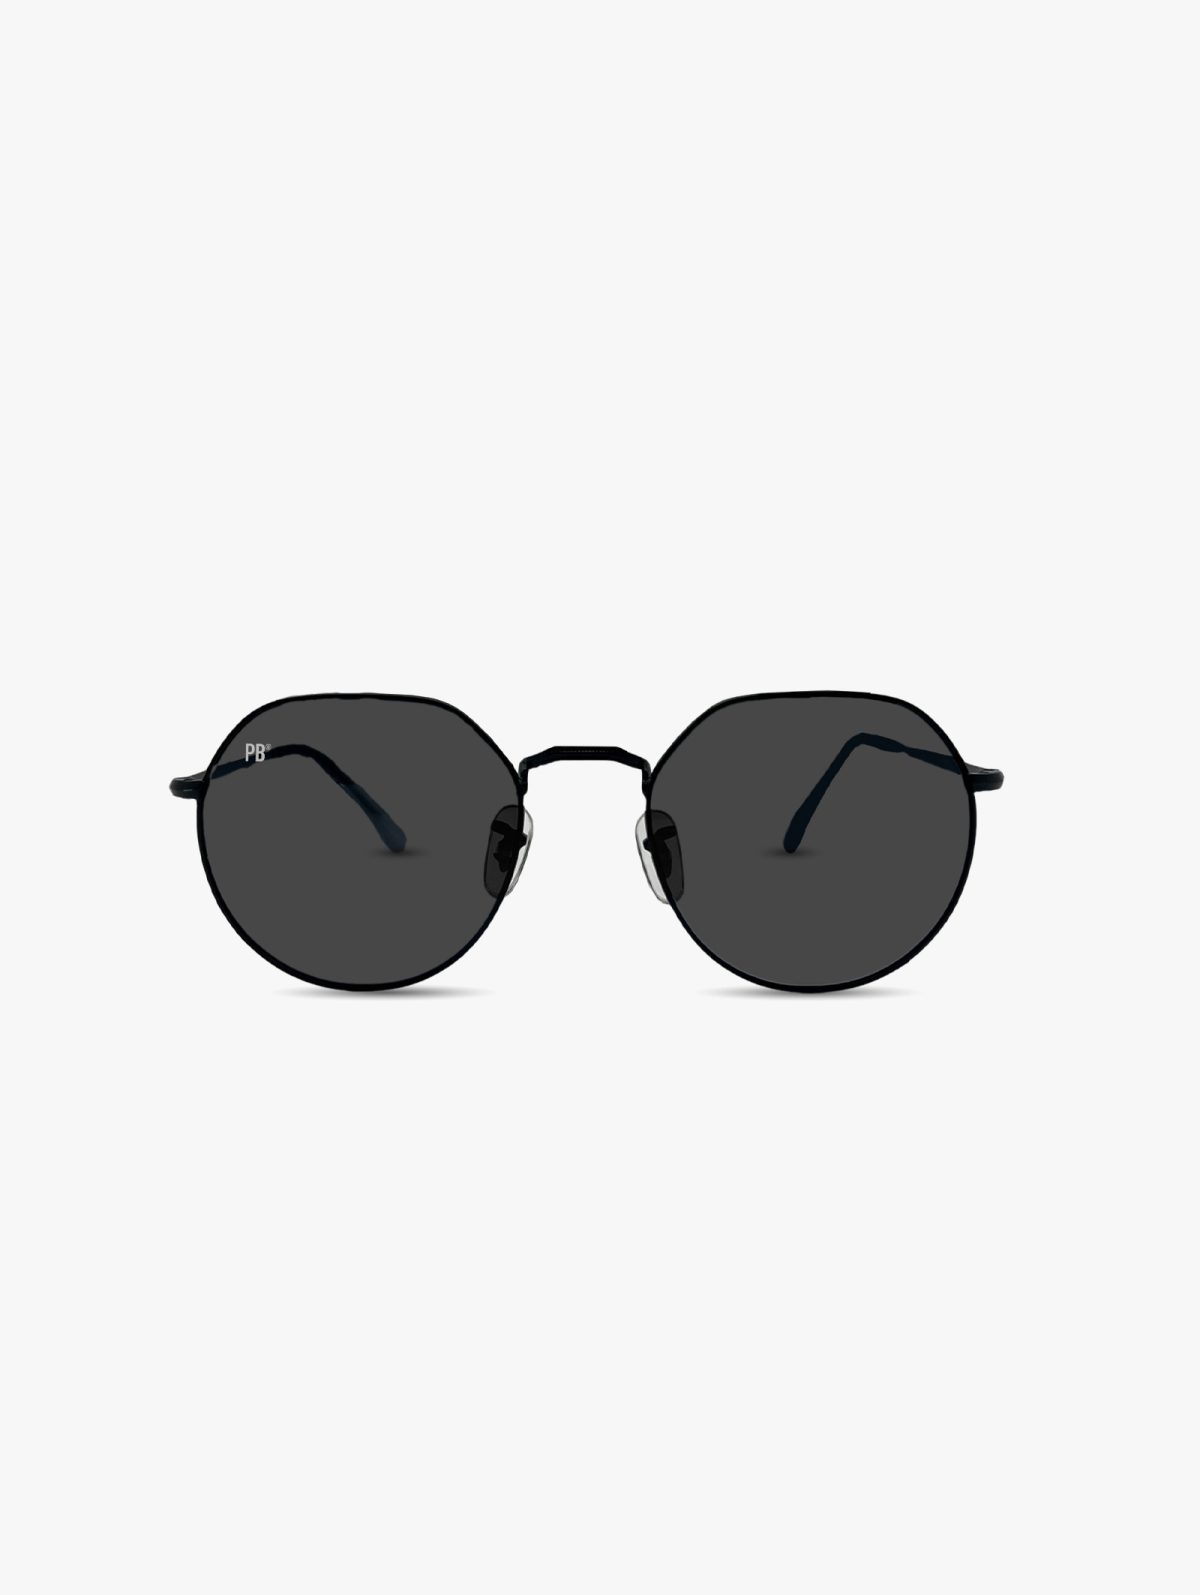 festival zonnebril pillenbrillen pb sunglasses